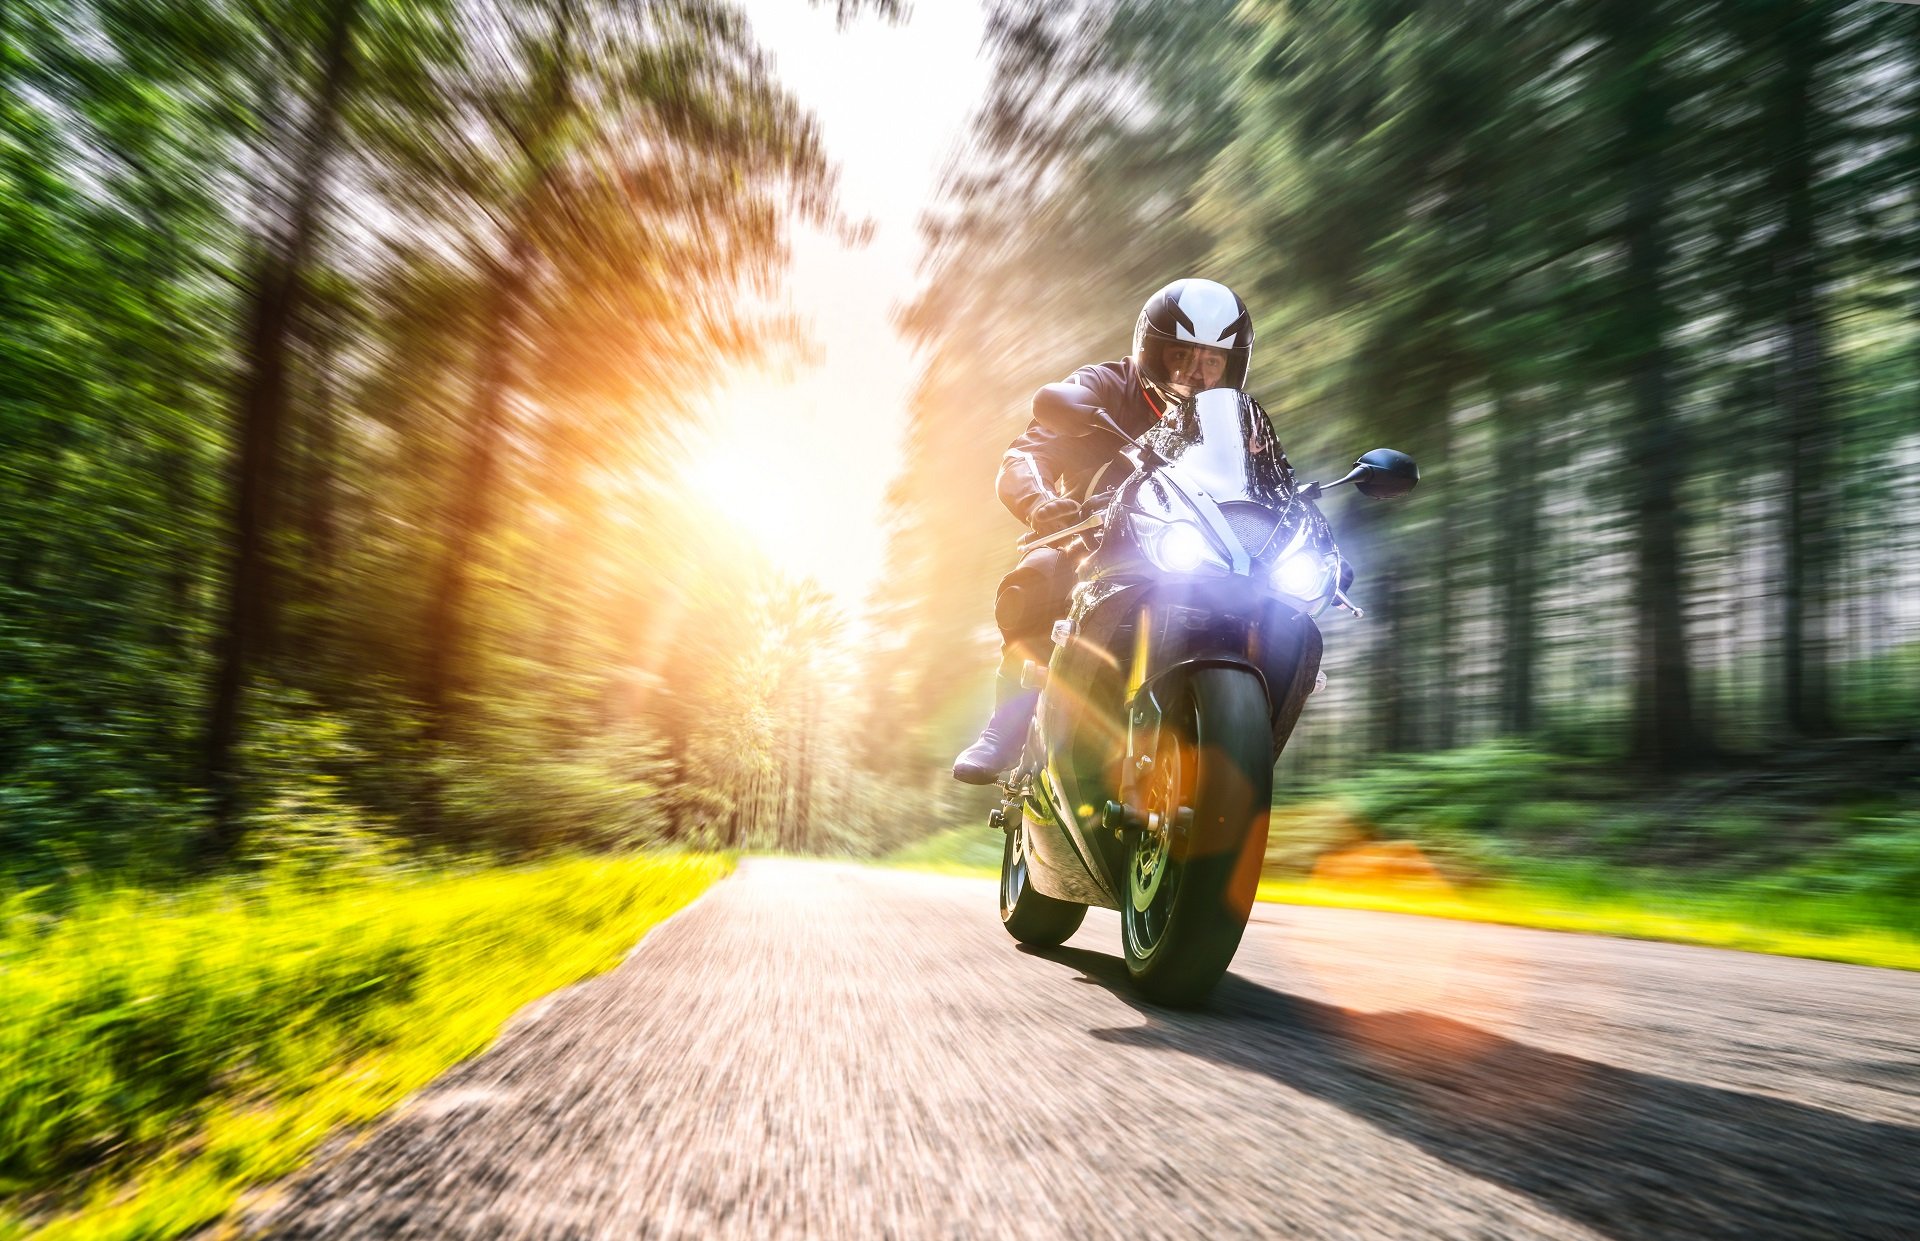 El complemento para la moto que querrás llevar al conocer sus múltiples beneficios